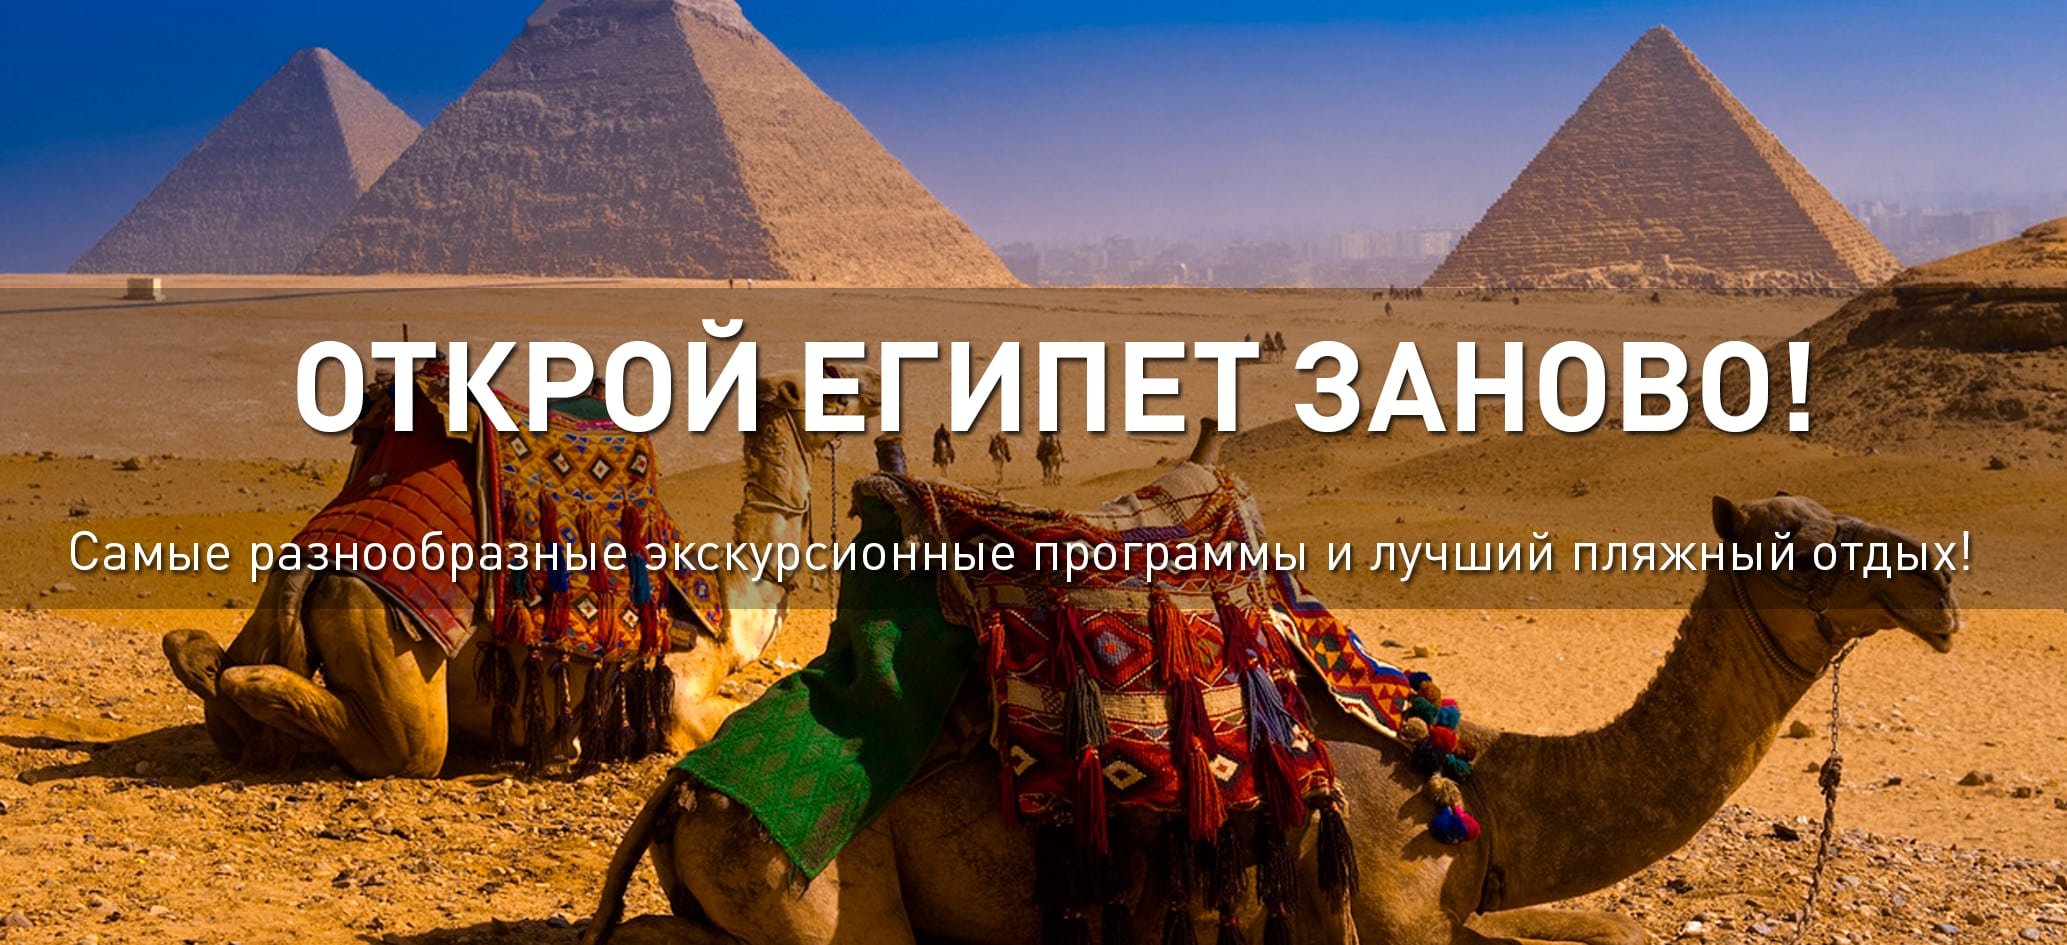 Экскурсионный отдых в Египте